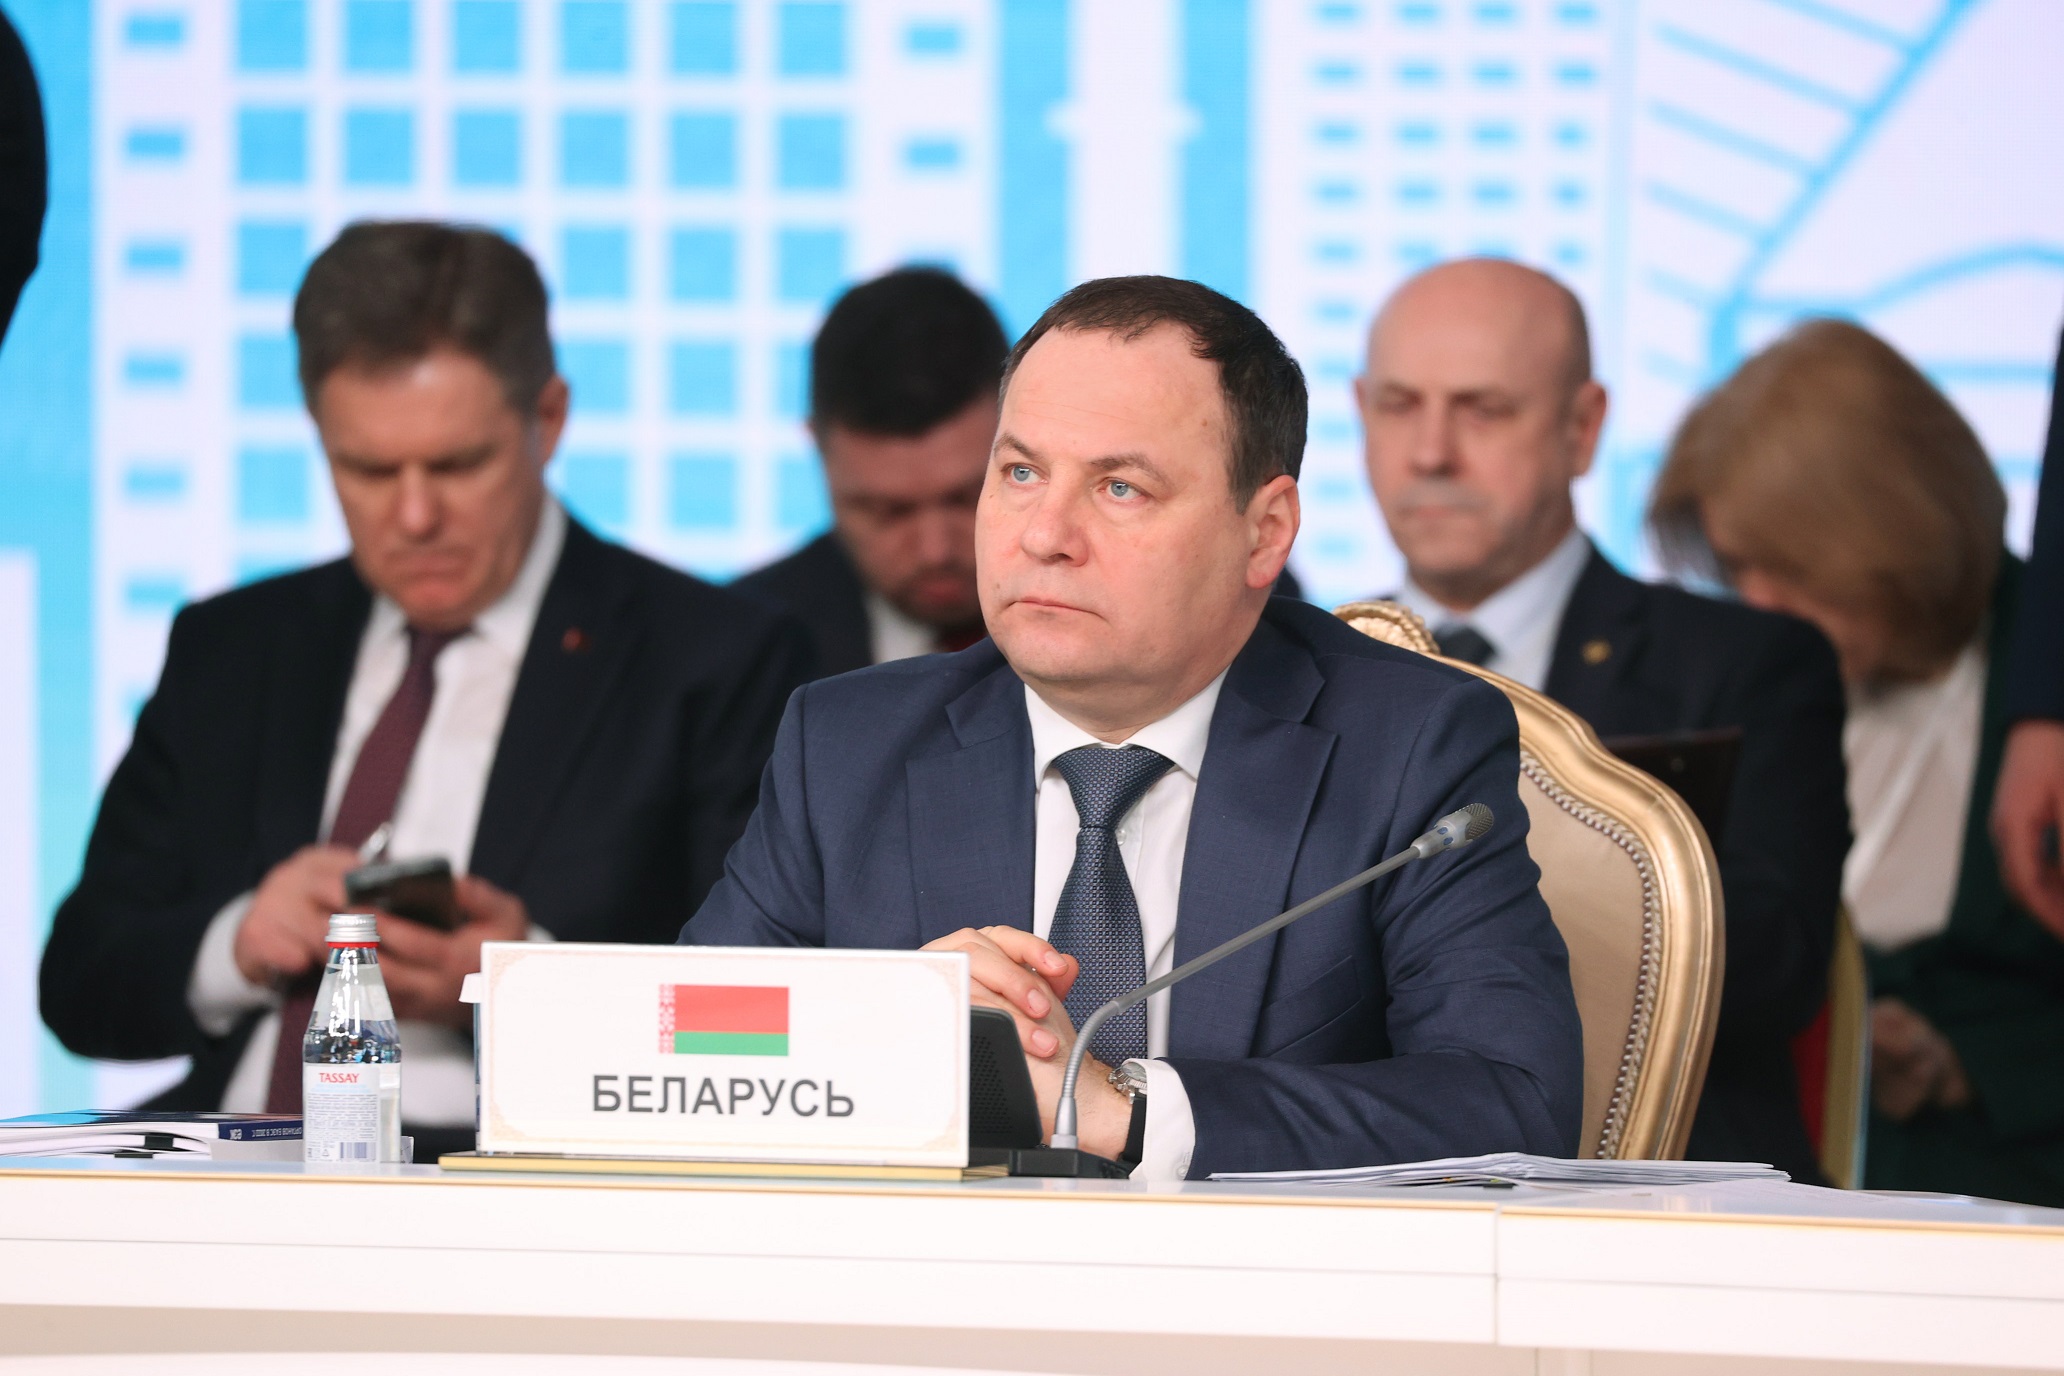 Роман Головченко: в ЕАЭС нужны действенные инструменты стимулирования промкооперации